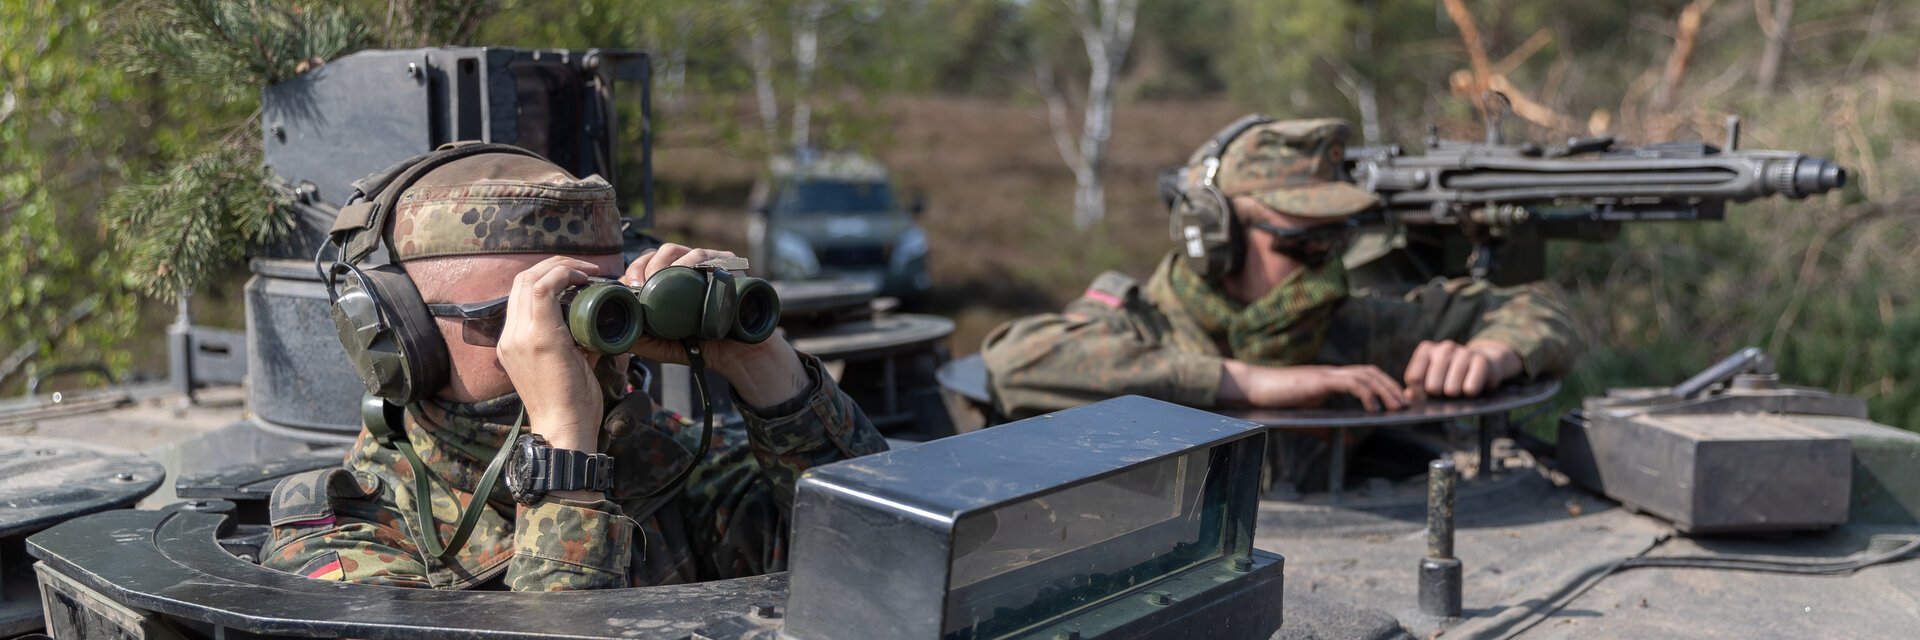 Soldaten mit Fernglas und Maschinengewehr schauen aus der Luke eines Panzers.